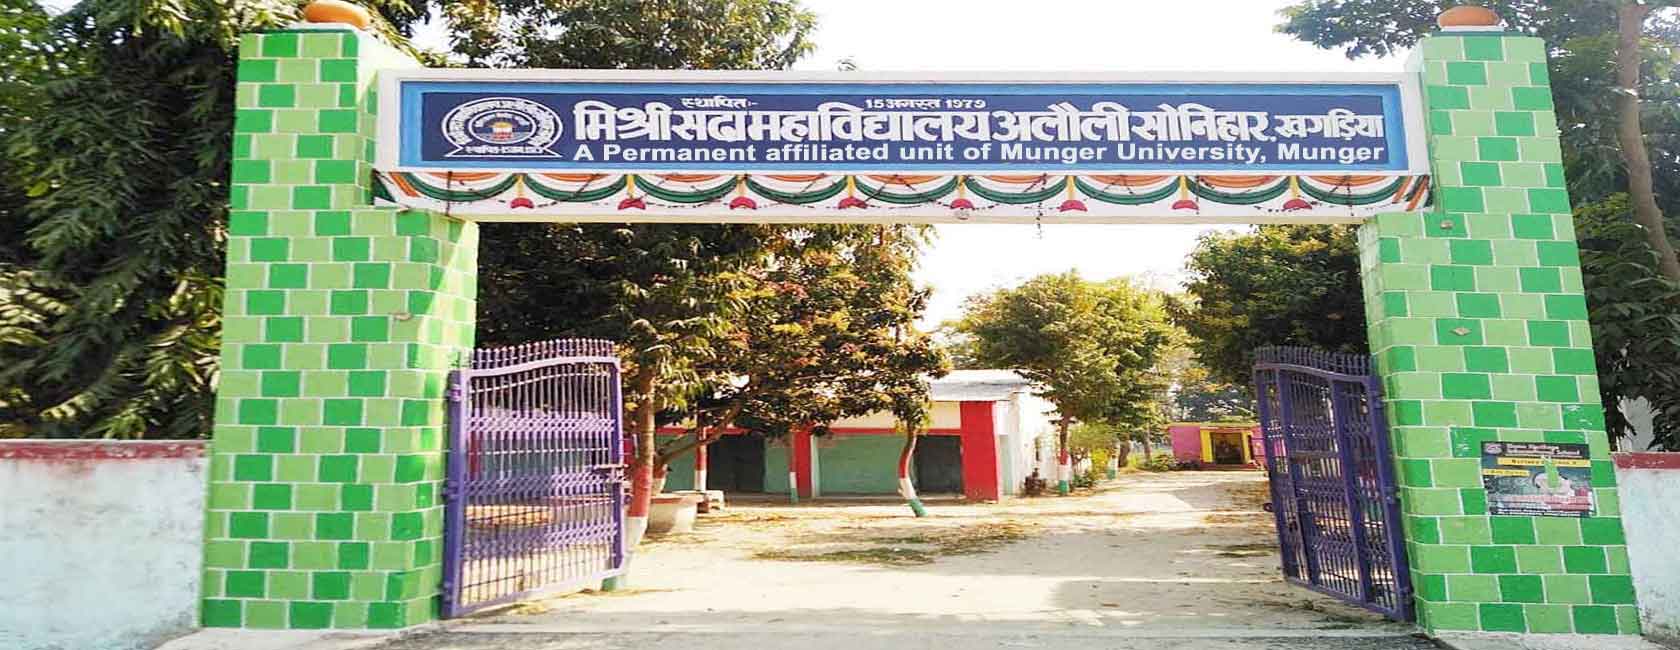 M.S. College, Khagaria Image